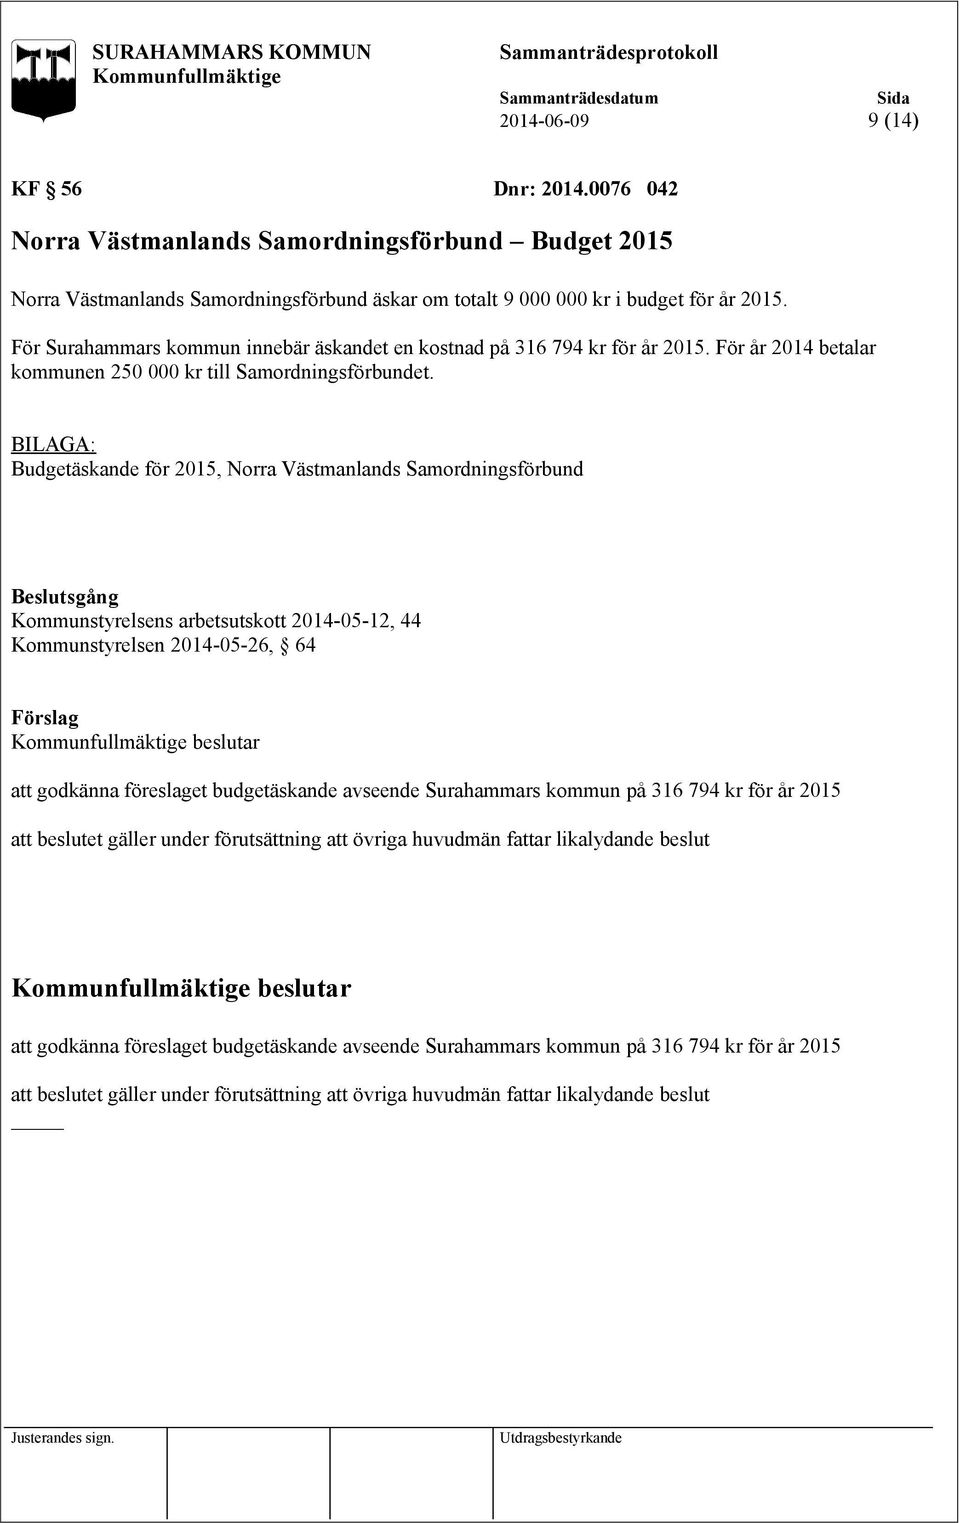 Budgetäskande för 2015, Norra Västmanlands Samordningsförbund Kommunstyrelsens arbetsutskott 2014-05-12, 44 Kommunstyrelsen 2014-05-26, 64 att godkänna föreslaget budgetäskande avseende Surahammars